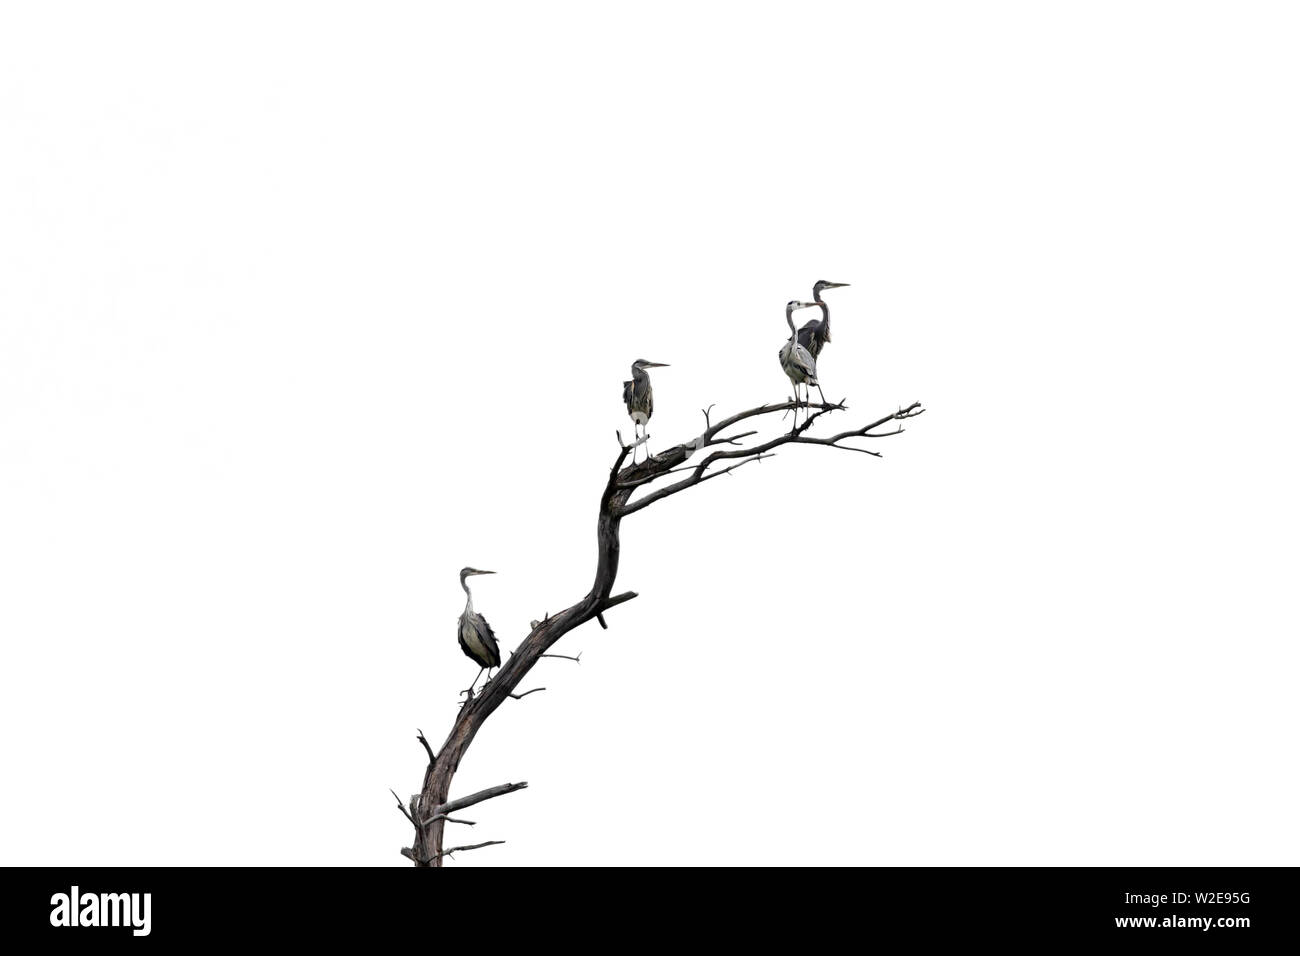 Groupe de quatre hérons cendrés (Ardea cinerea) perchés dans dead tree against white background Banque D'Images